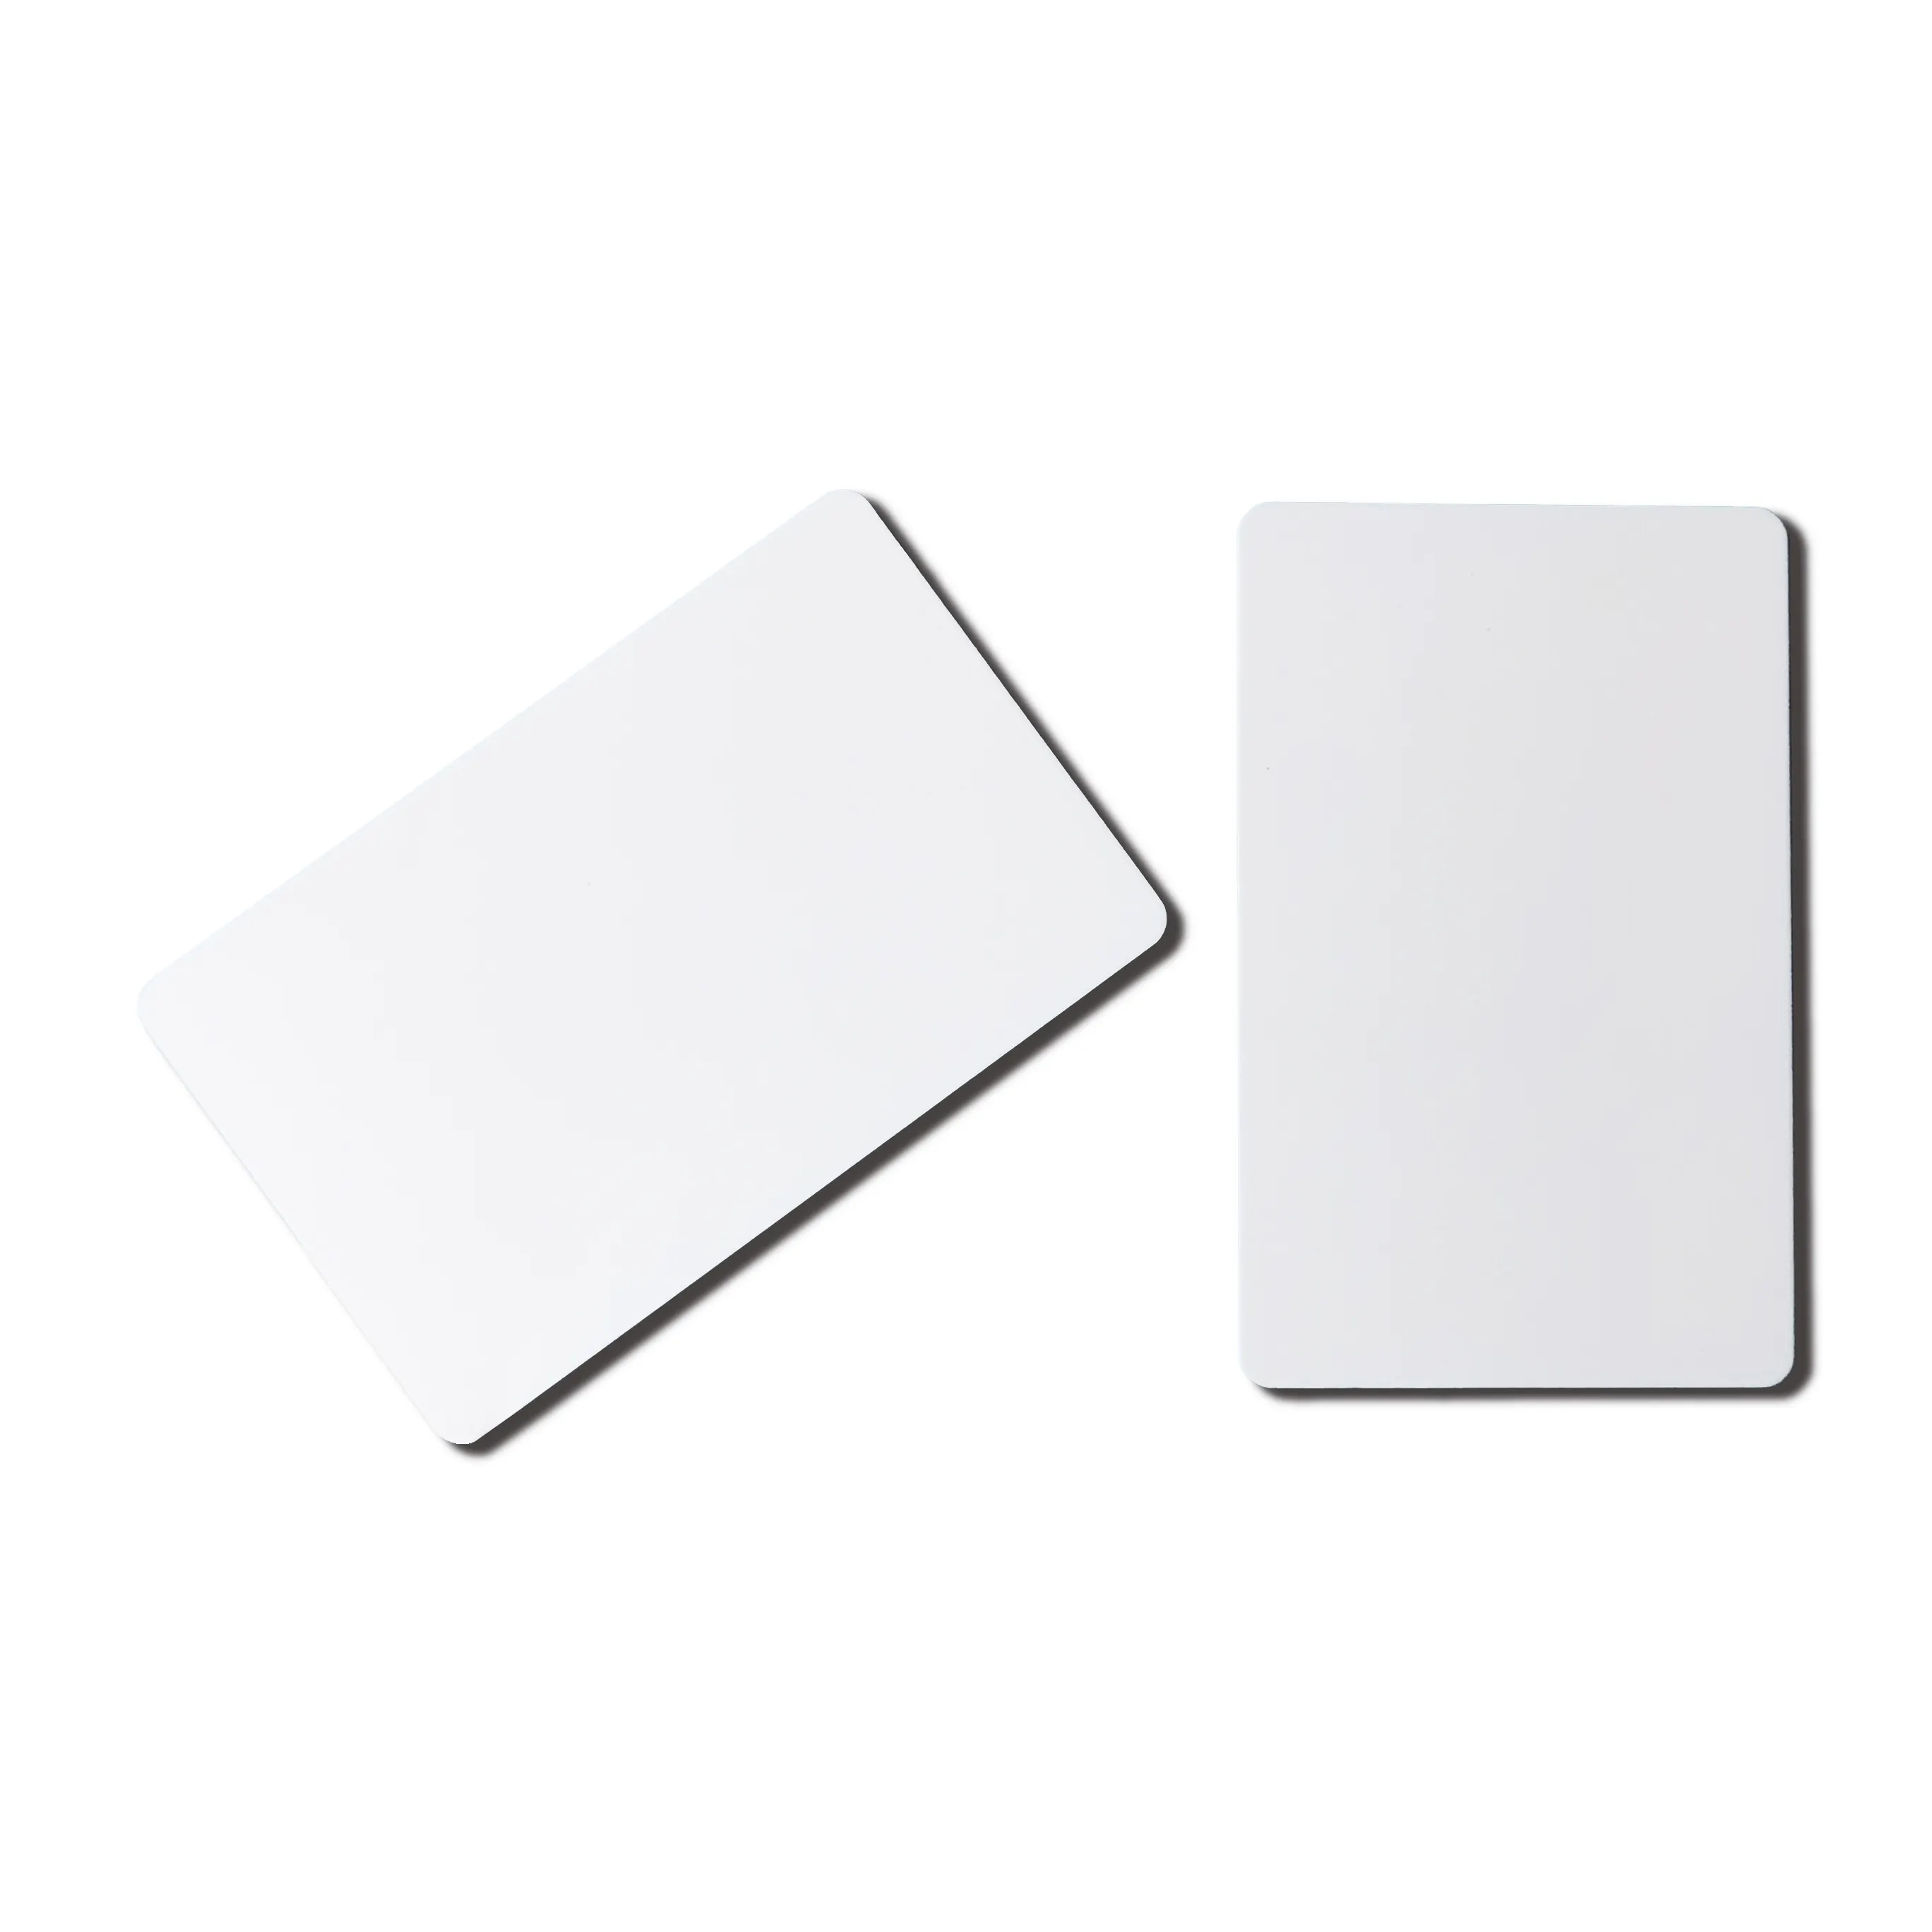 ज़ेबरा थर्मल आईडी कार्ड के लिए क्र80 सफेद खाली pvc प्लास्टिक कार्ड प्रिंटर